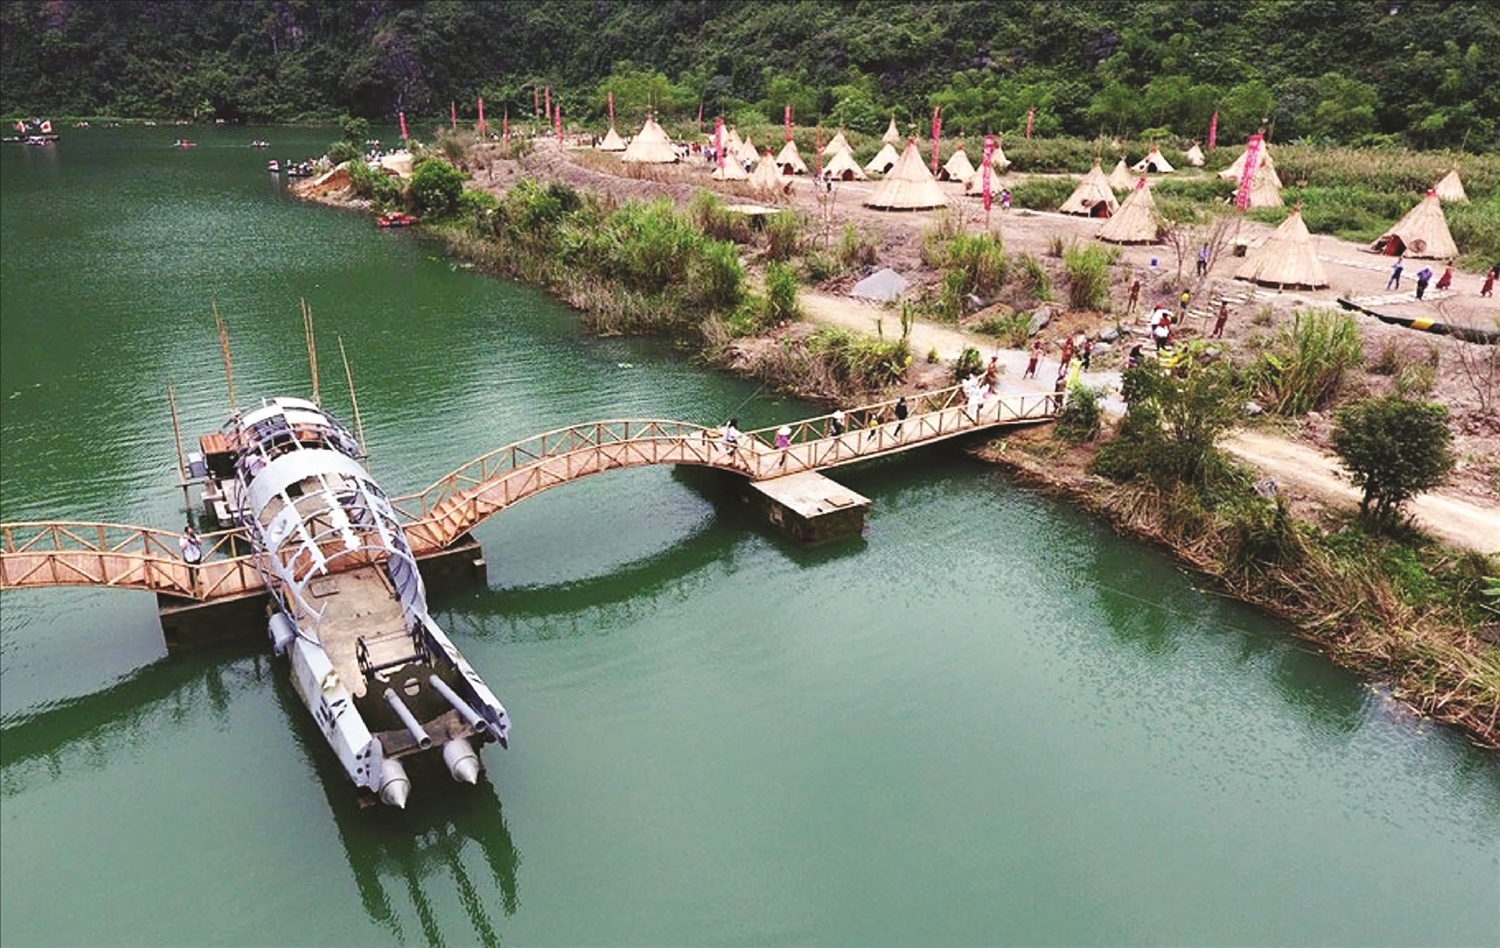 Phim trường của “Kong - Đảo đầu lâu” tại Khu du lịch sinh thái Tràng An (huyện Hoa Lư, Ninh Bình) trở thành điểm du lịch hấp dẫn du khách